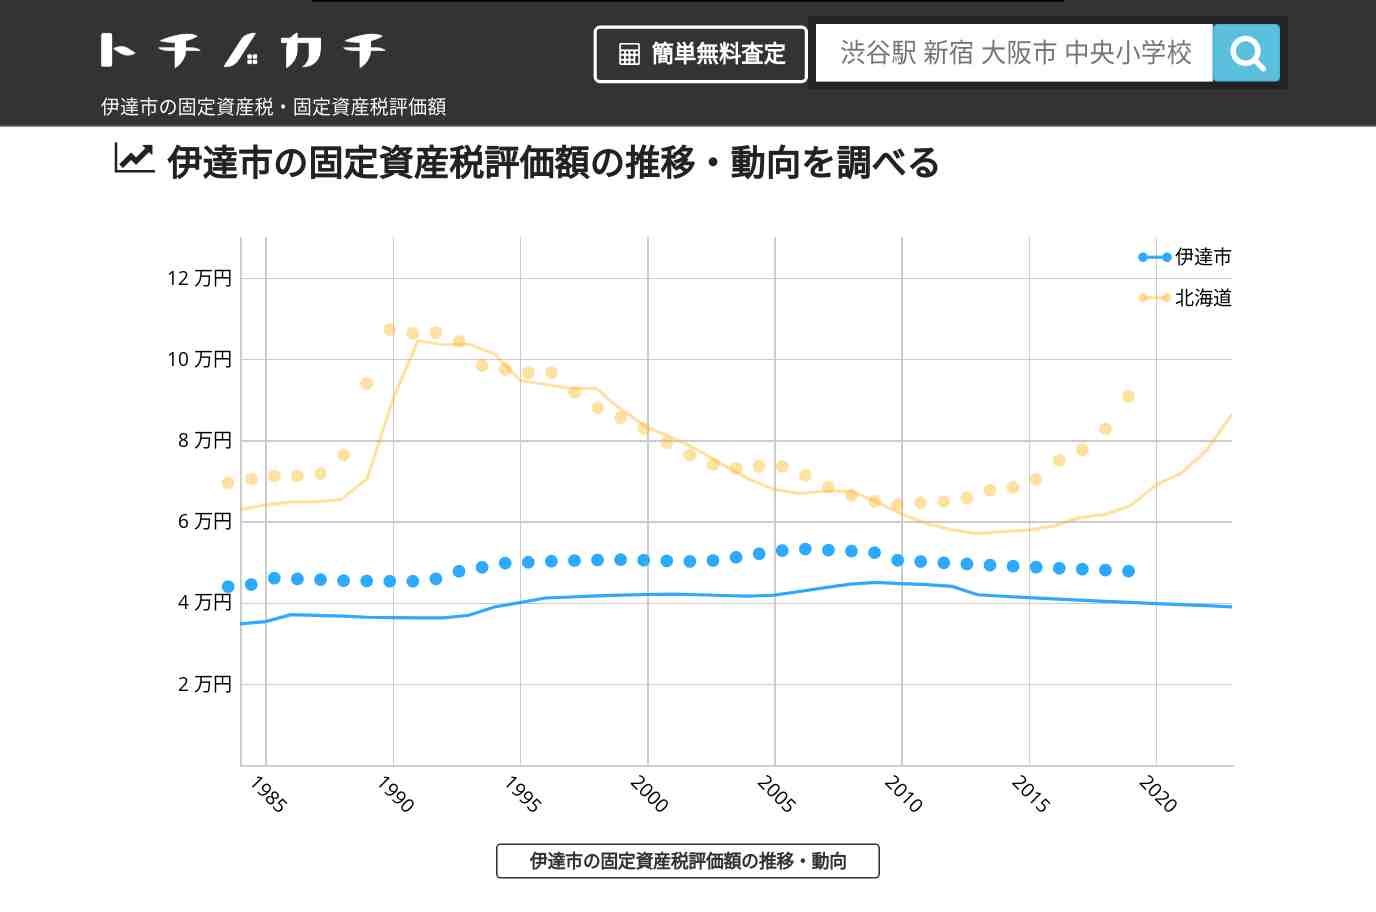 大滝小学校(北海道 伊達市)周辺の固定資産税・固定資産税評価額 | トチノカチ